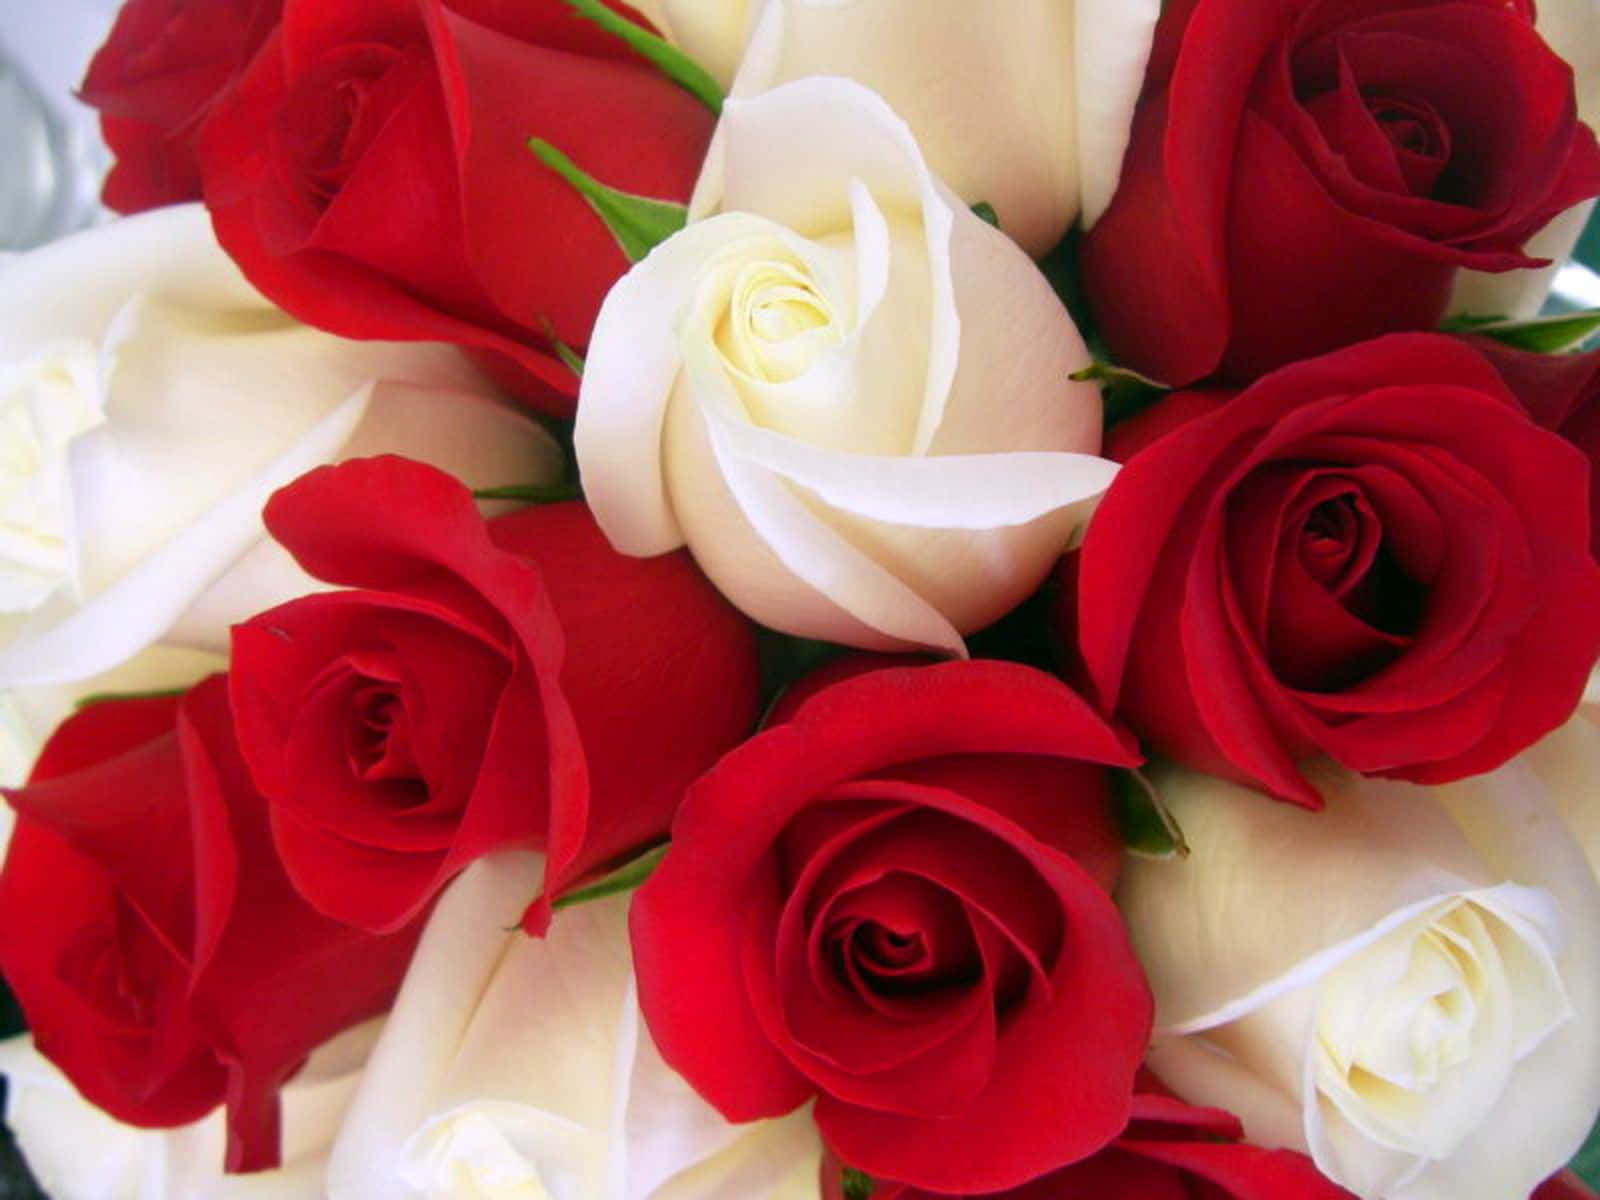 Unaimagen De Belleza Y Romance: La Rosa Roja